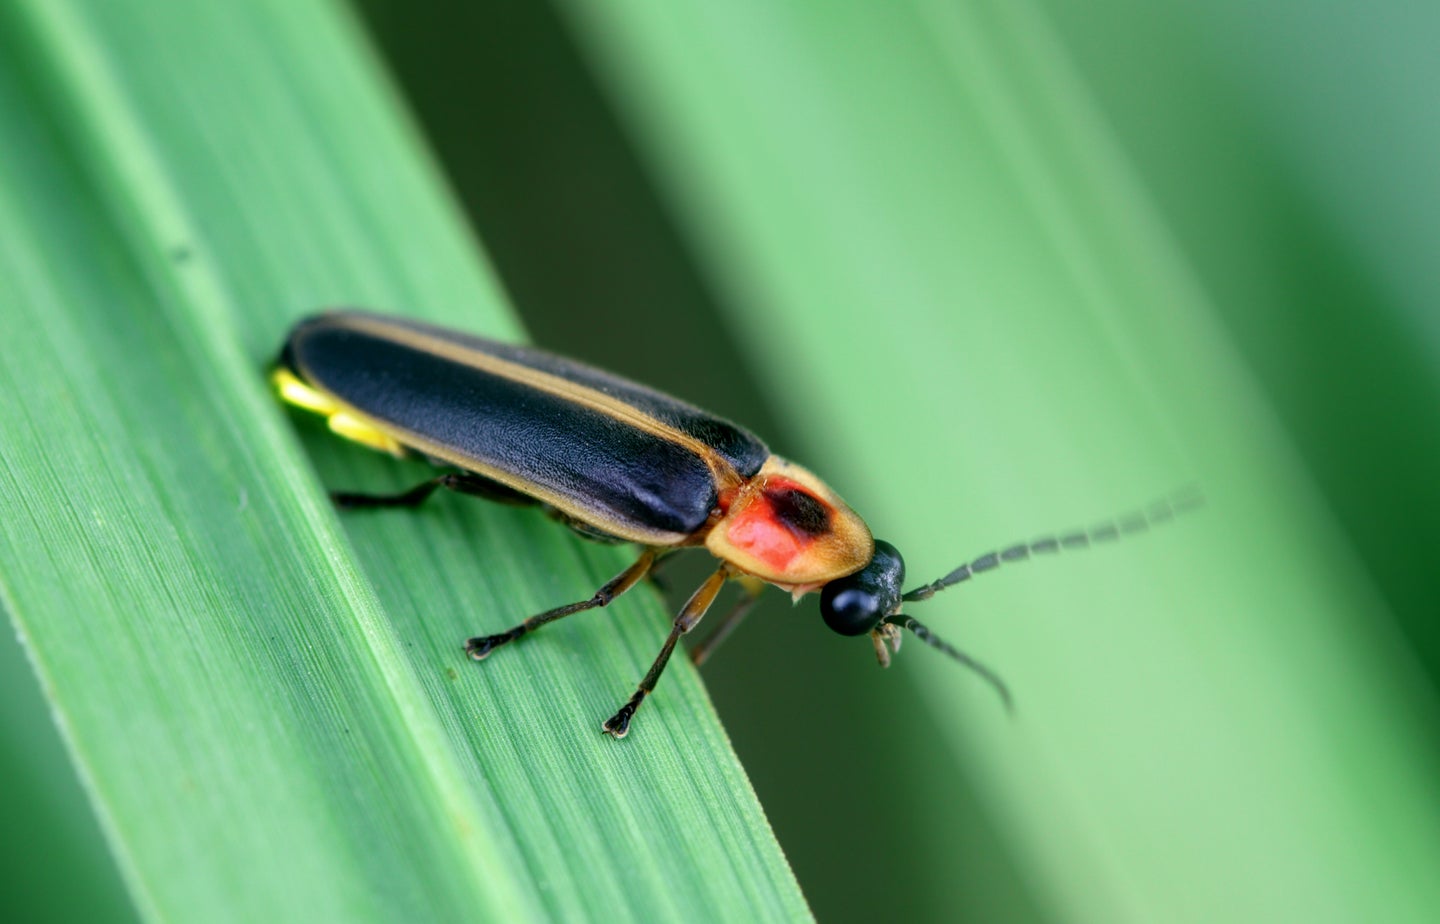 a firefly sitting on a leaf